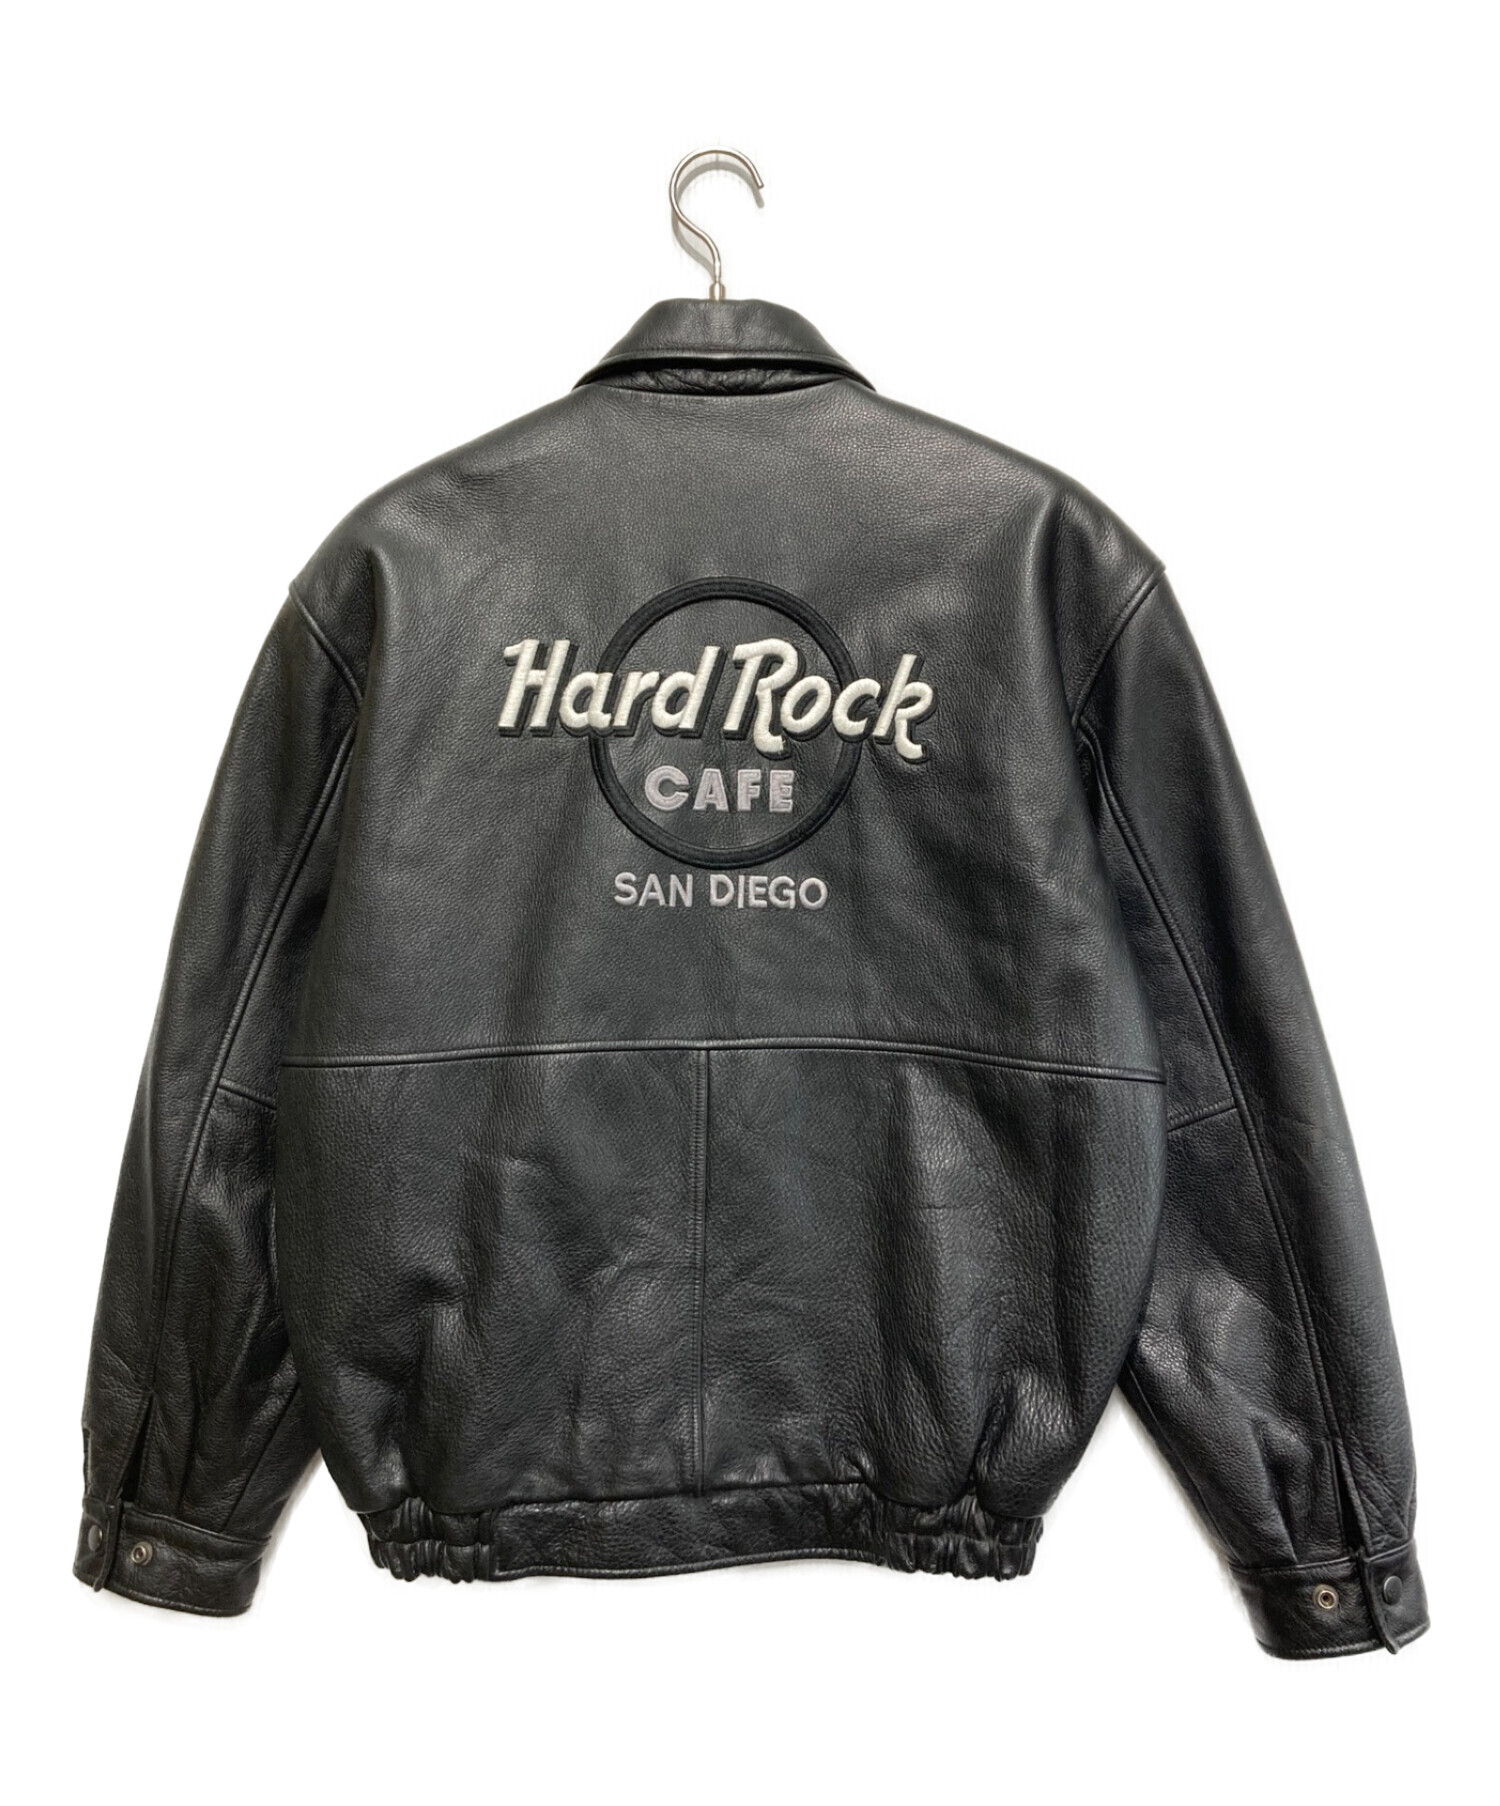 Hard Rock cafe (ハードロックカフェ) 刺繍ライダースジャケット ブラック サイズ:S